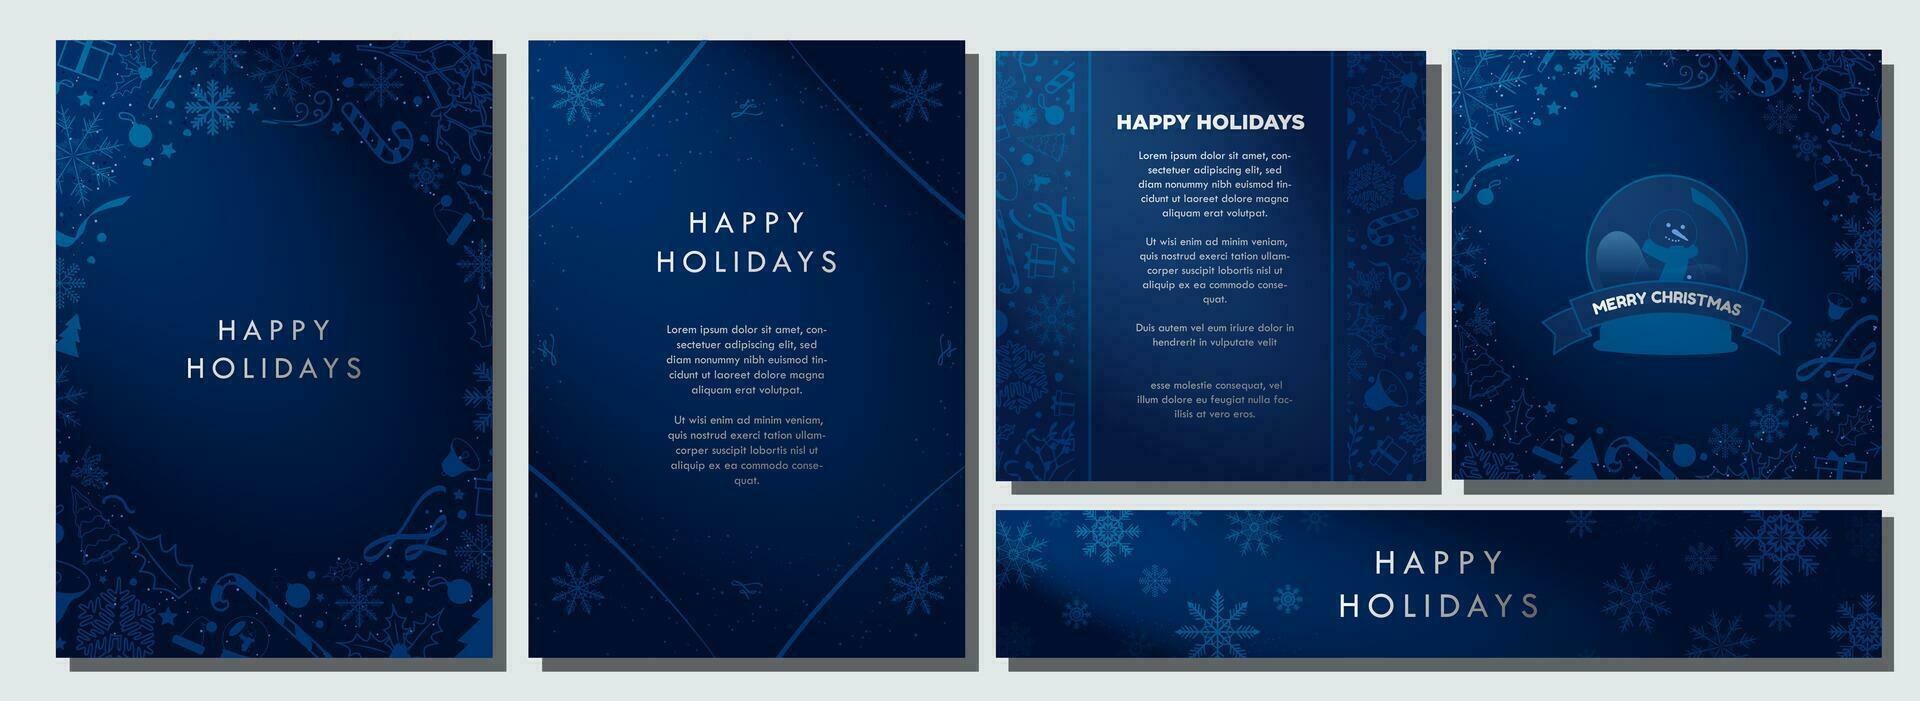 à moda Natal tema fundos dentro gradiente meia noite azul e branco, decorado com azul Natal elementos. lindo minimalista inverno modelos. cartão, bandeiras, a4 cartazes. vetor ilustração.